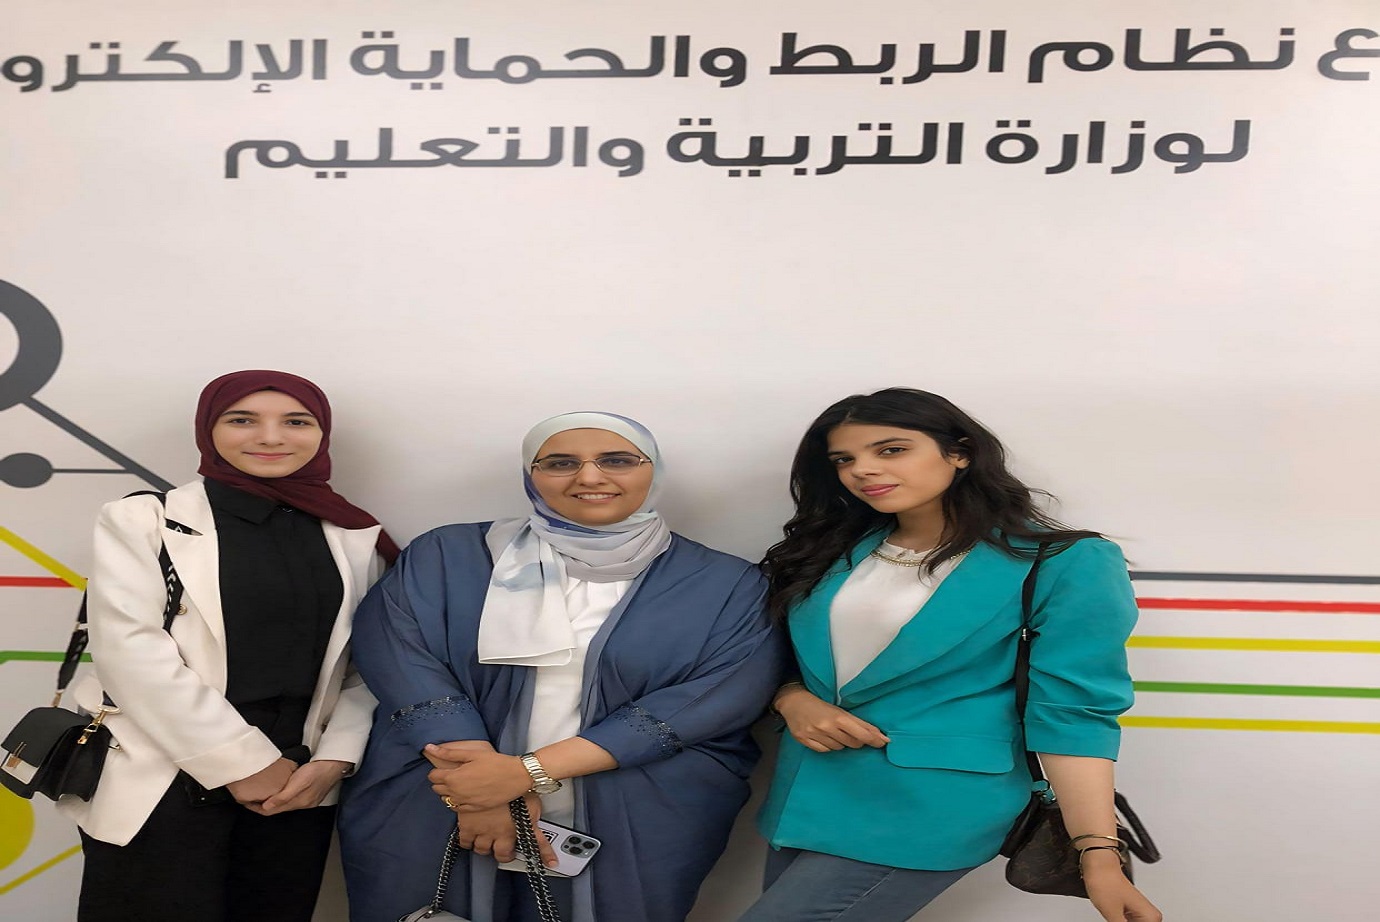 زيارات علمية لطلبة هندسة البرمجيات في "عمان العربية" لتعزيز مهاراتهم العملية1